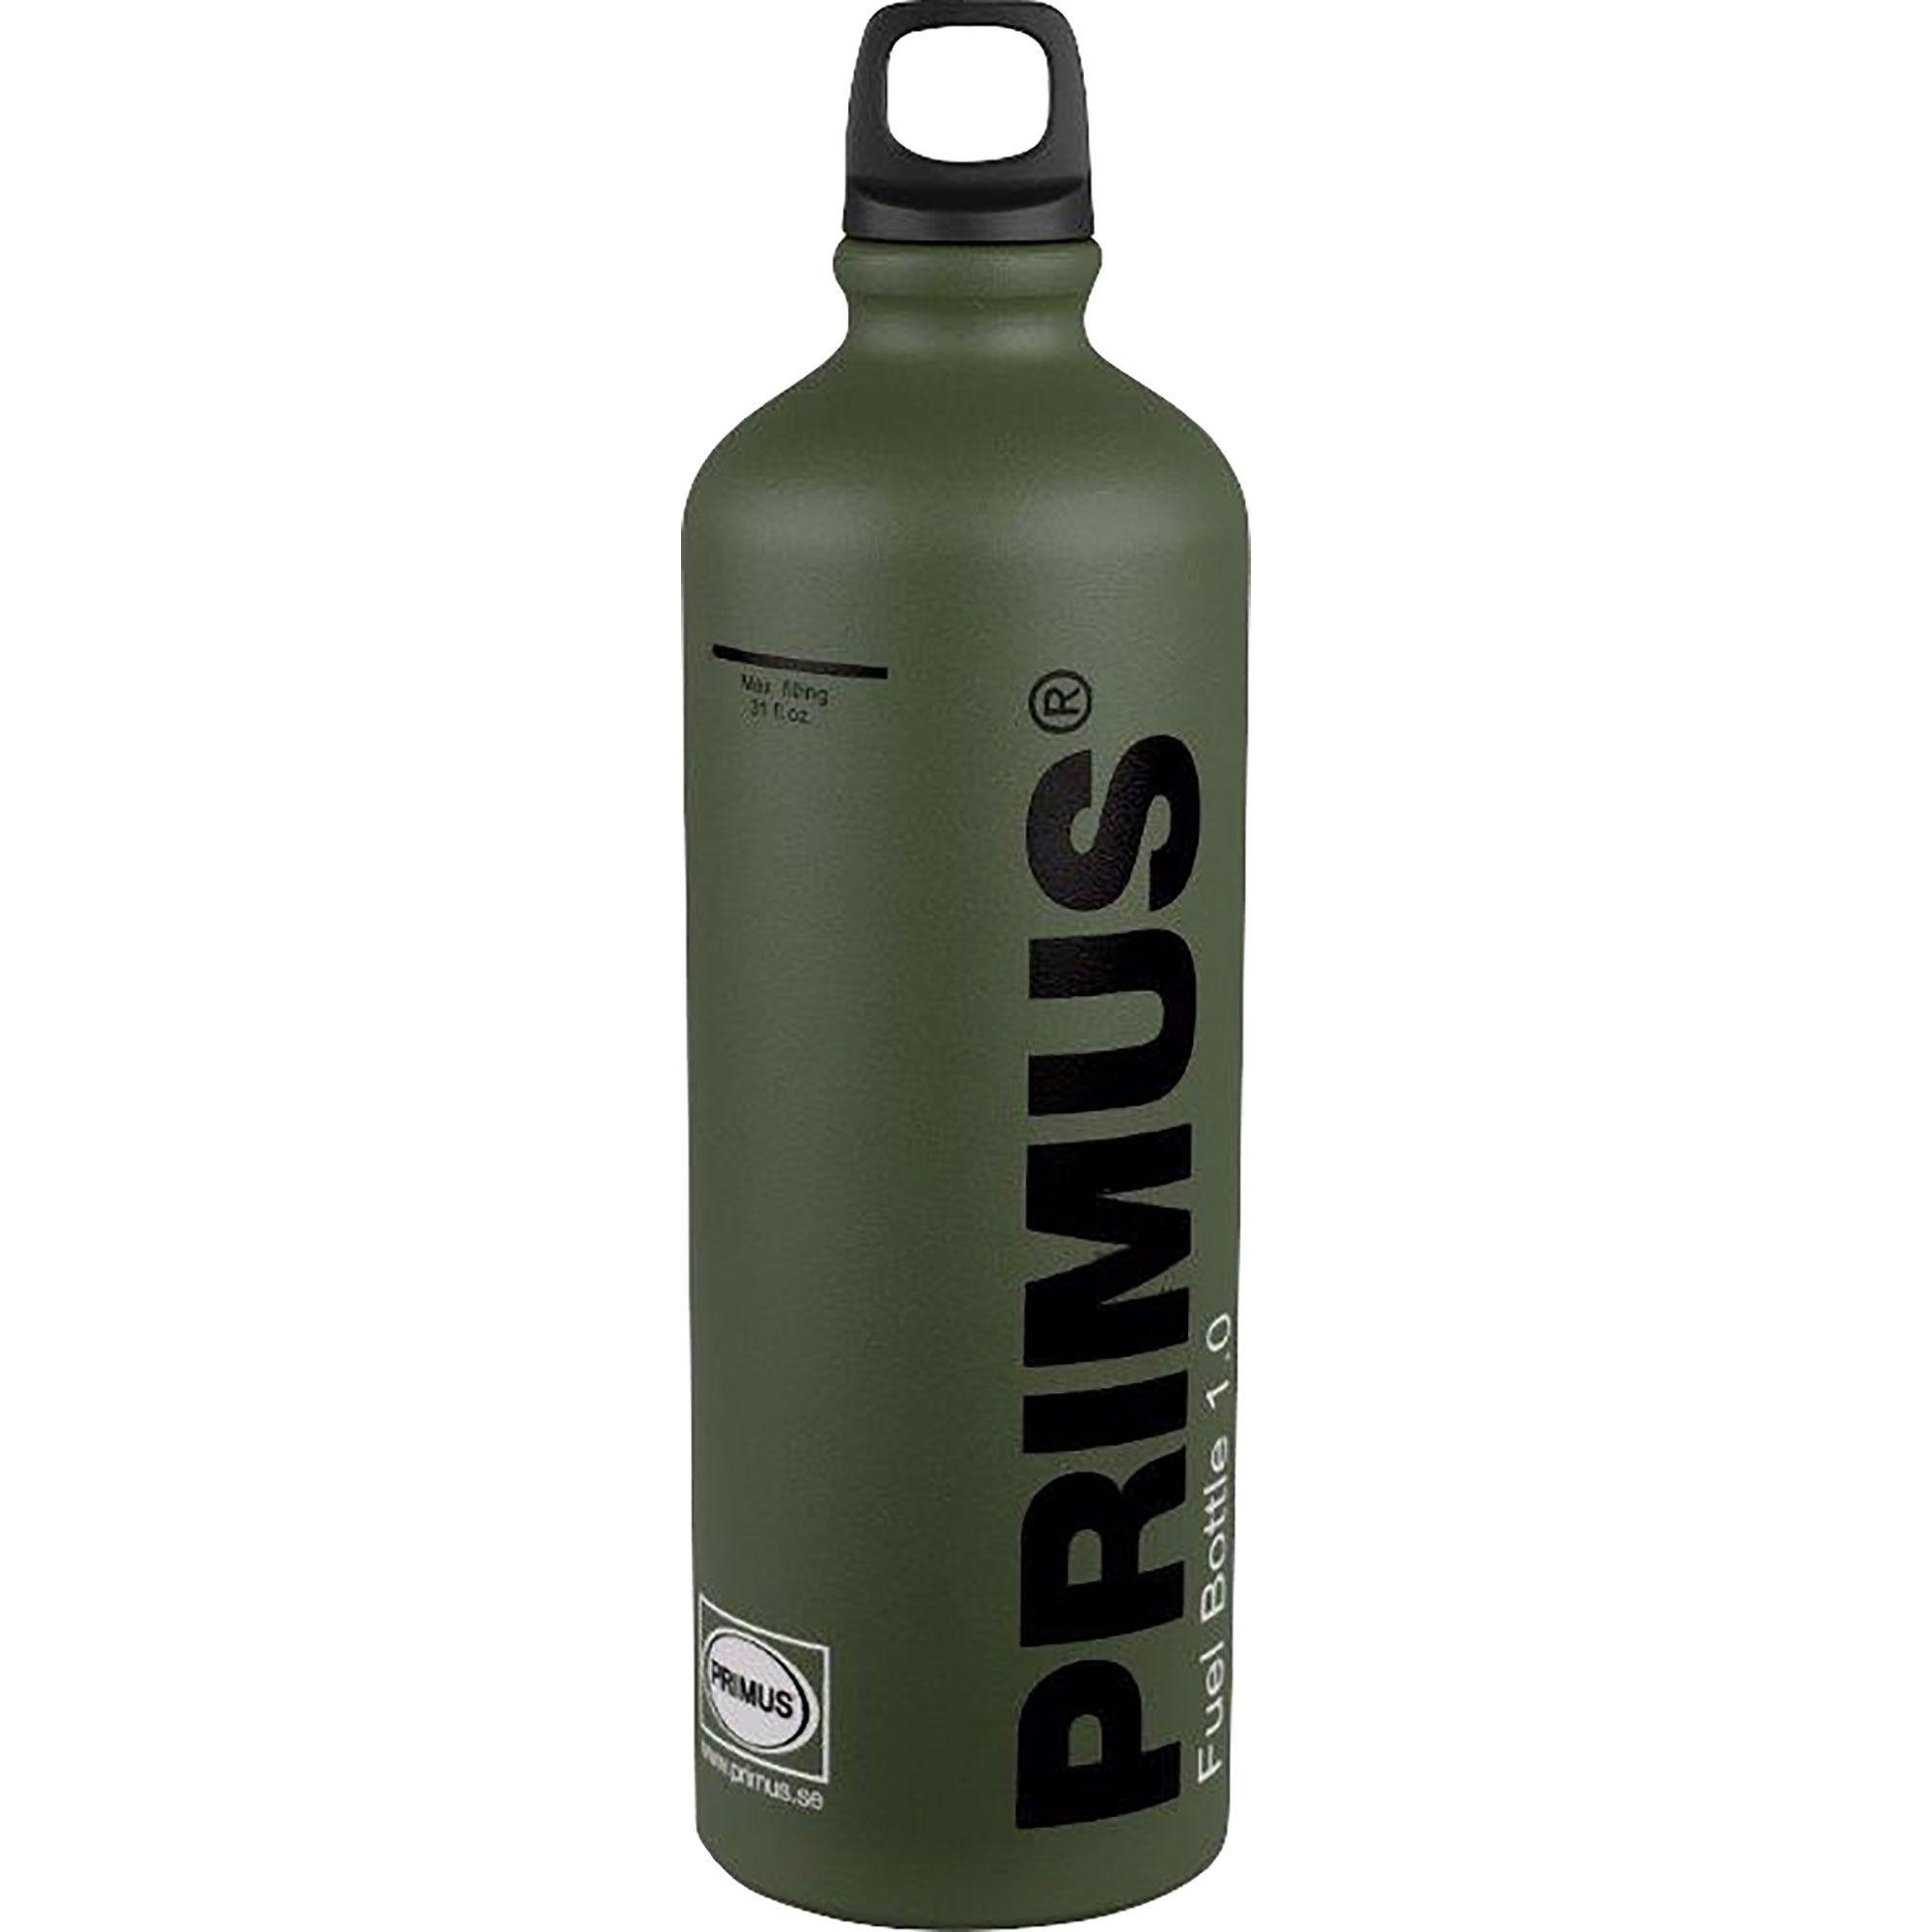 Butelka paliwowa Primus z zakrętką zabezpieczającą przed dziećmi